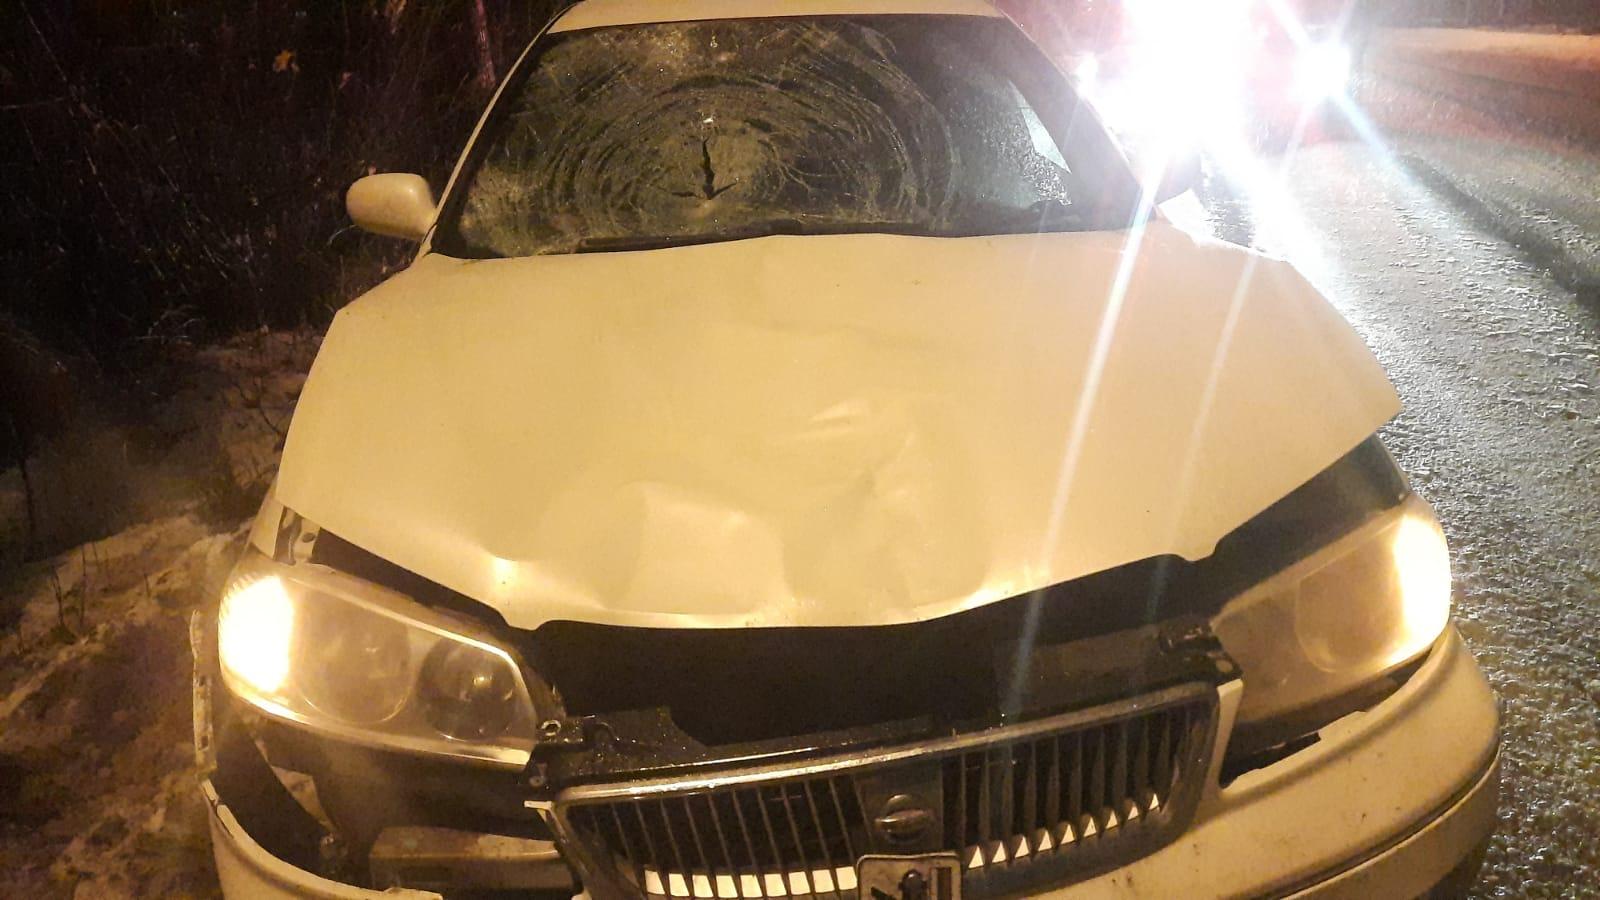 Фото Водитель Nissan насмерть сбил пешехода на проезжей части в Новосибирске 3